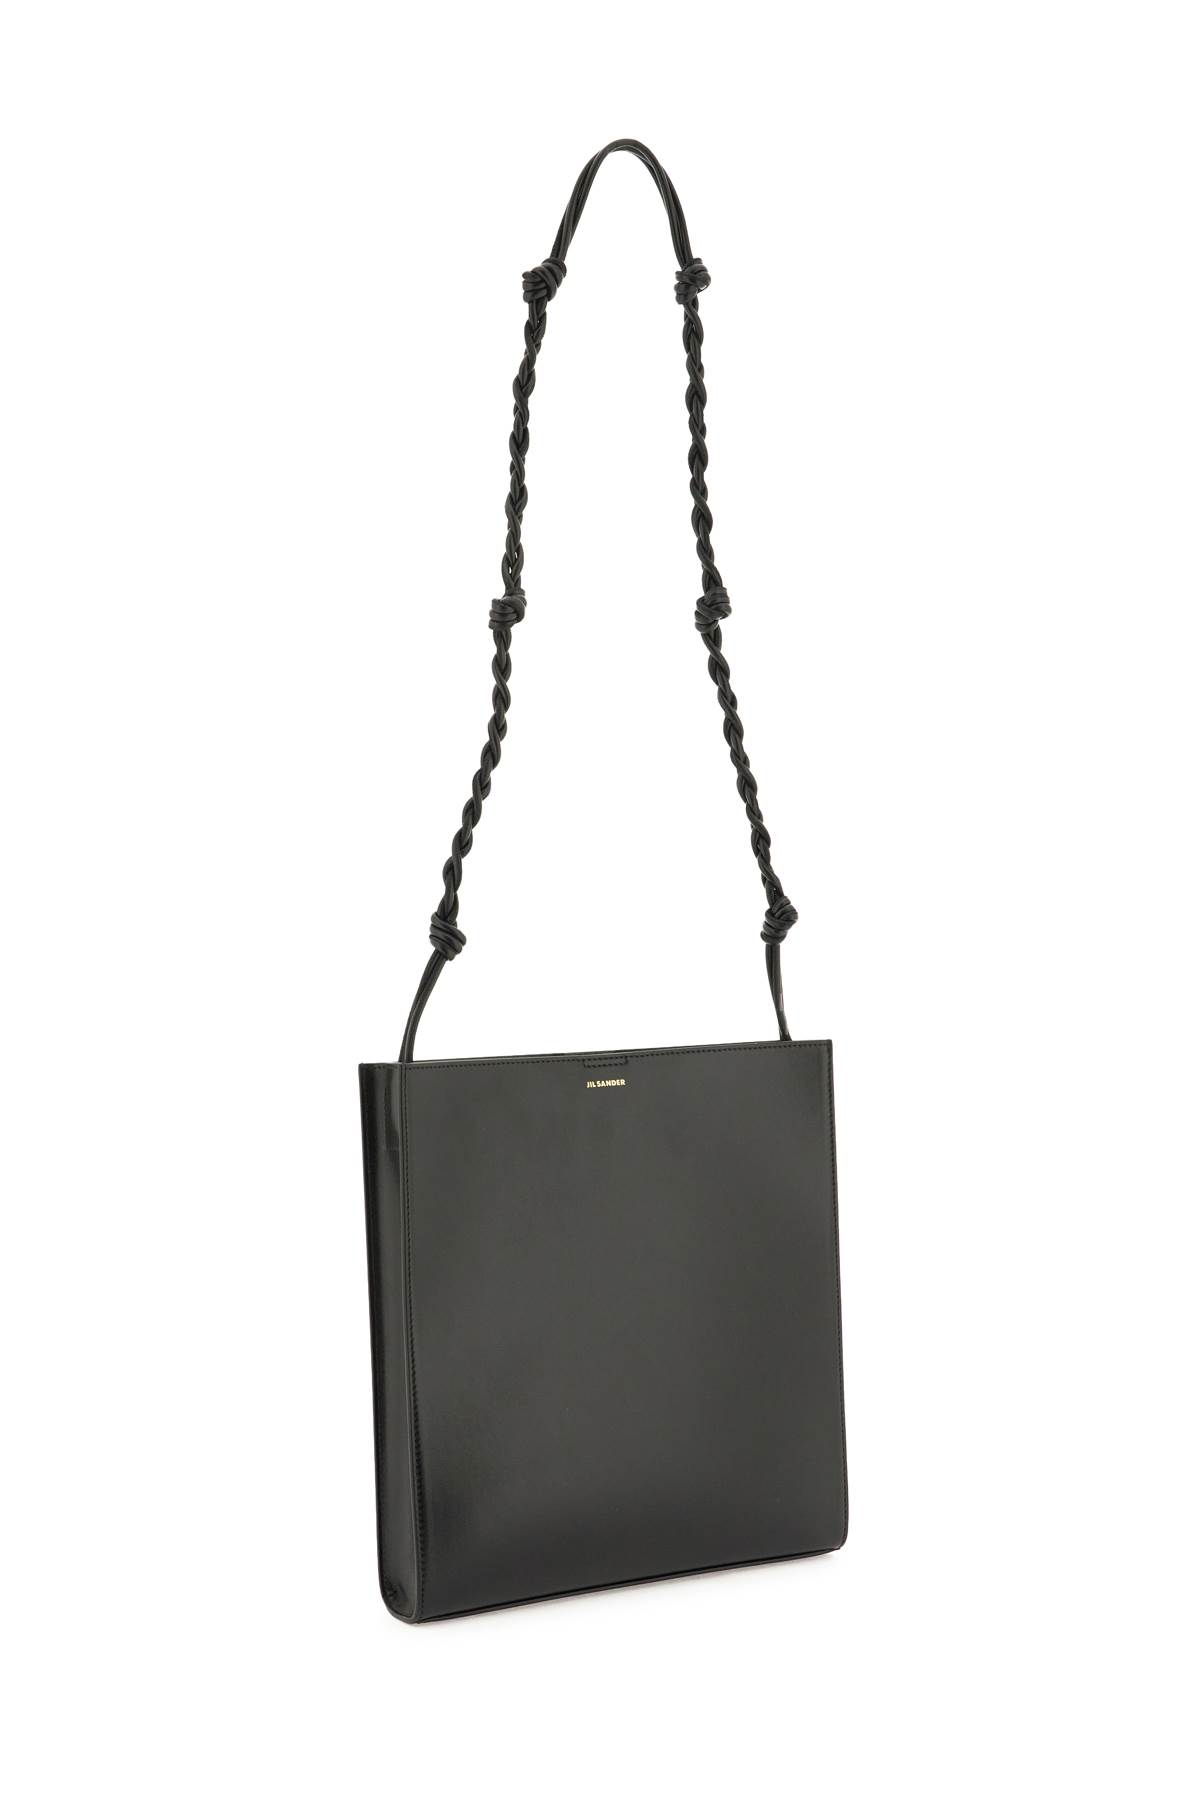 Shop Jil Sander Tangle Medium Shoulder Bag In Black (black)